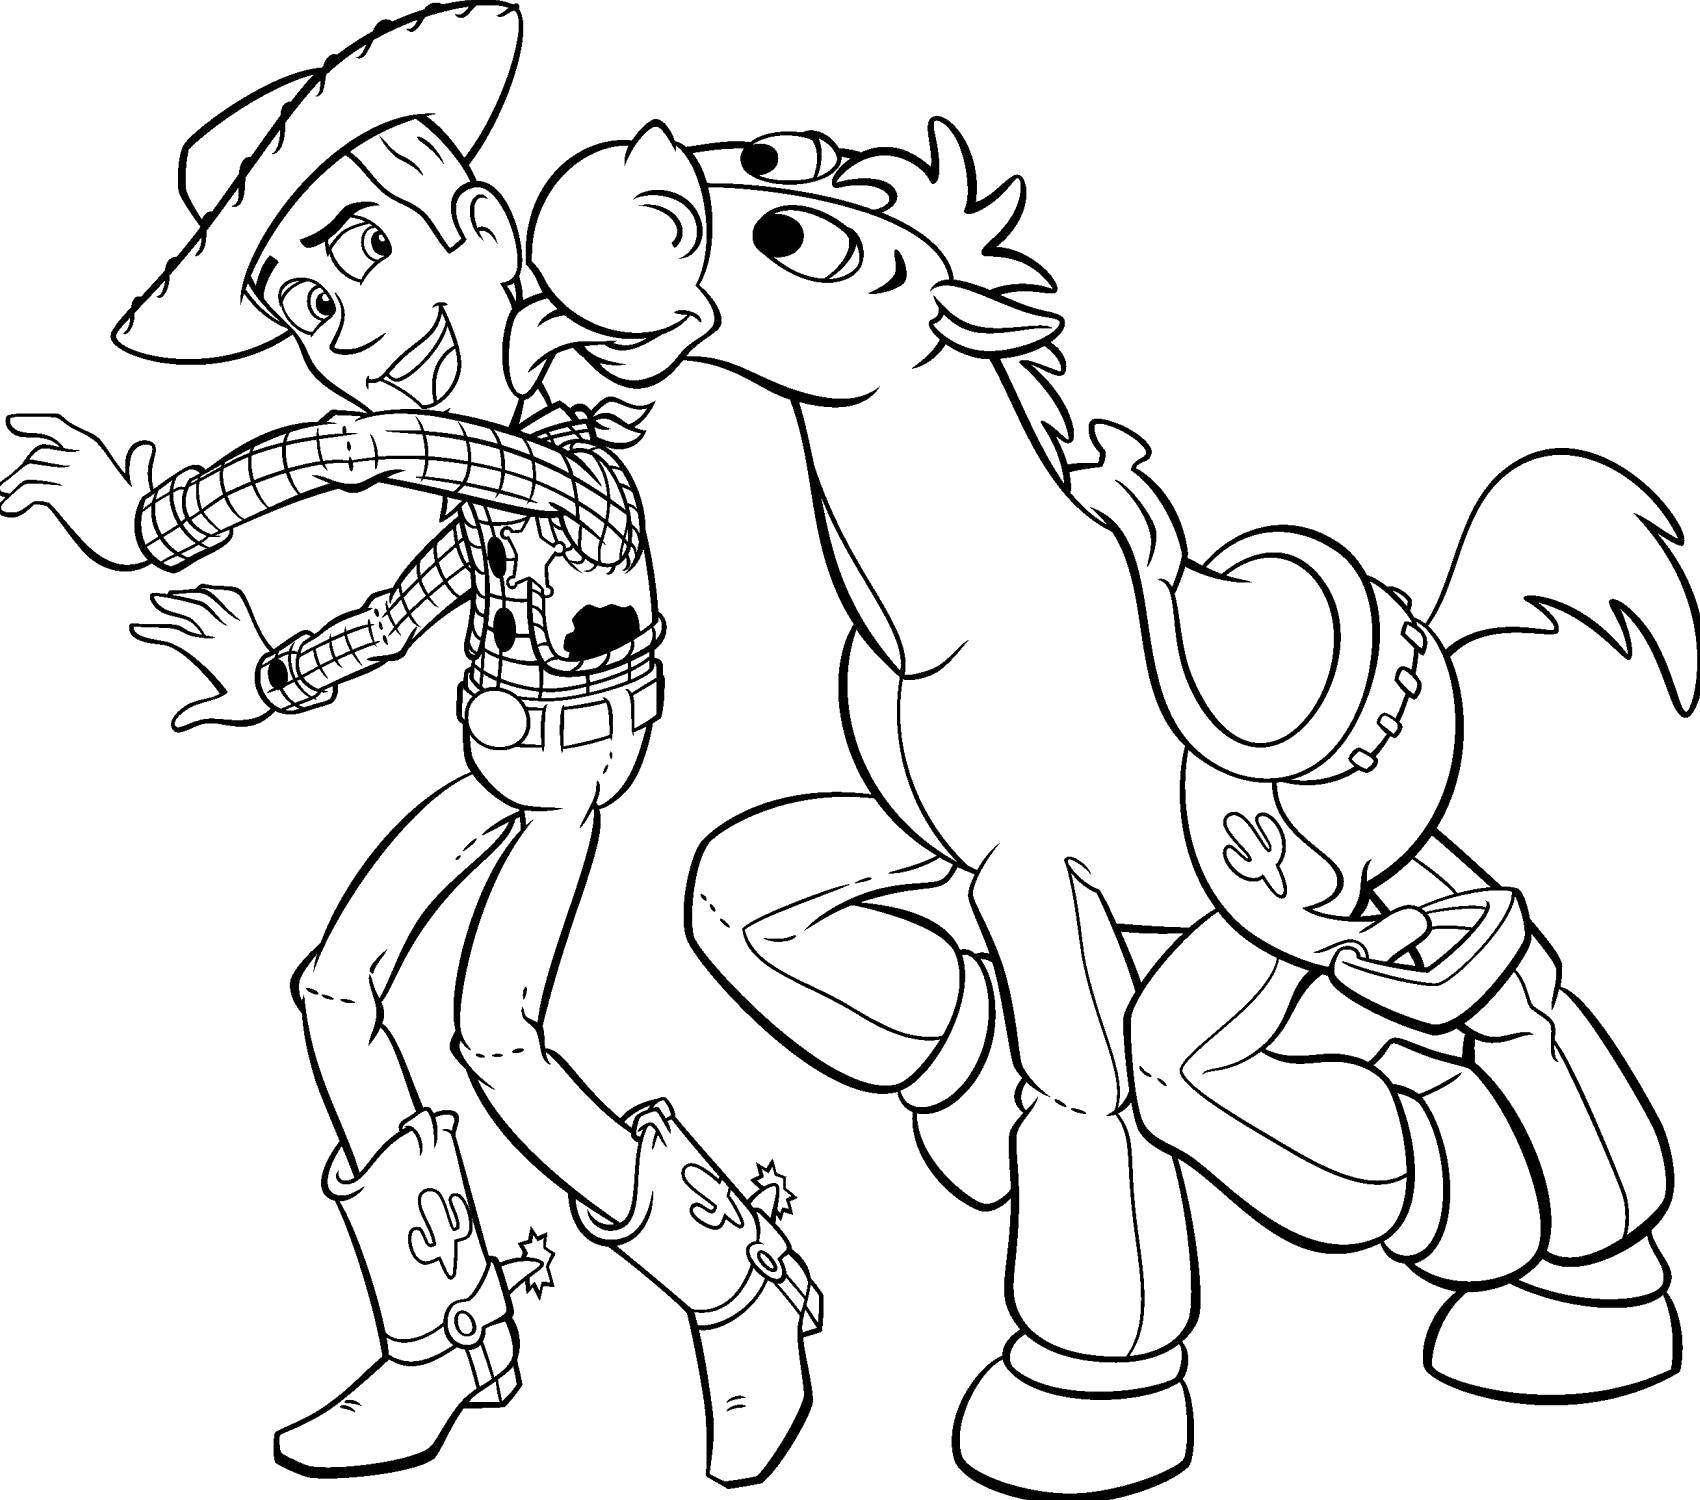 Розмальовки  Шериф вуді з конем. Завантажити розмальовку Персонаж з мультфільму, Історія іграшок .  Роздрукувати ,Діснеївські розмальовки,